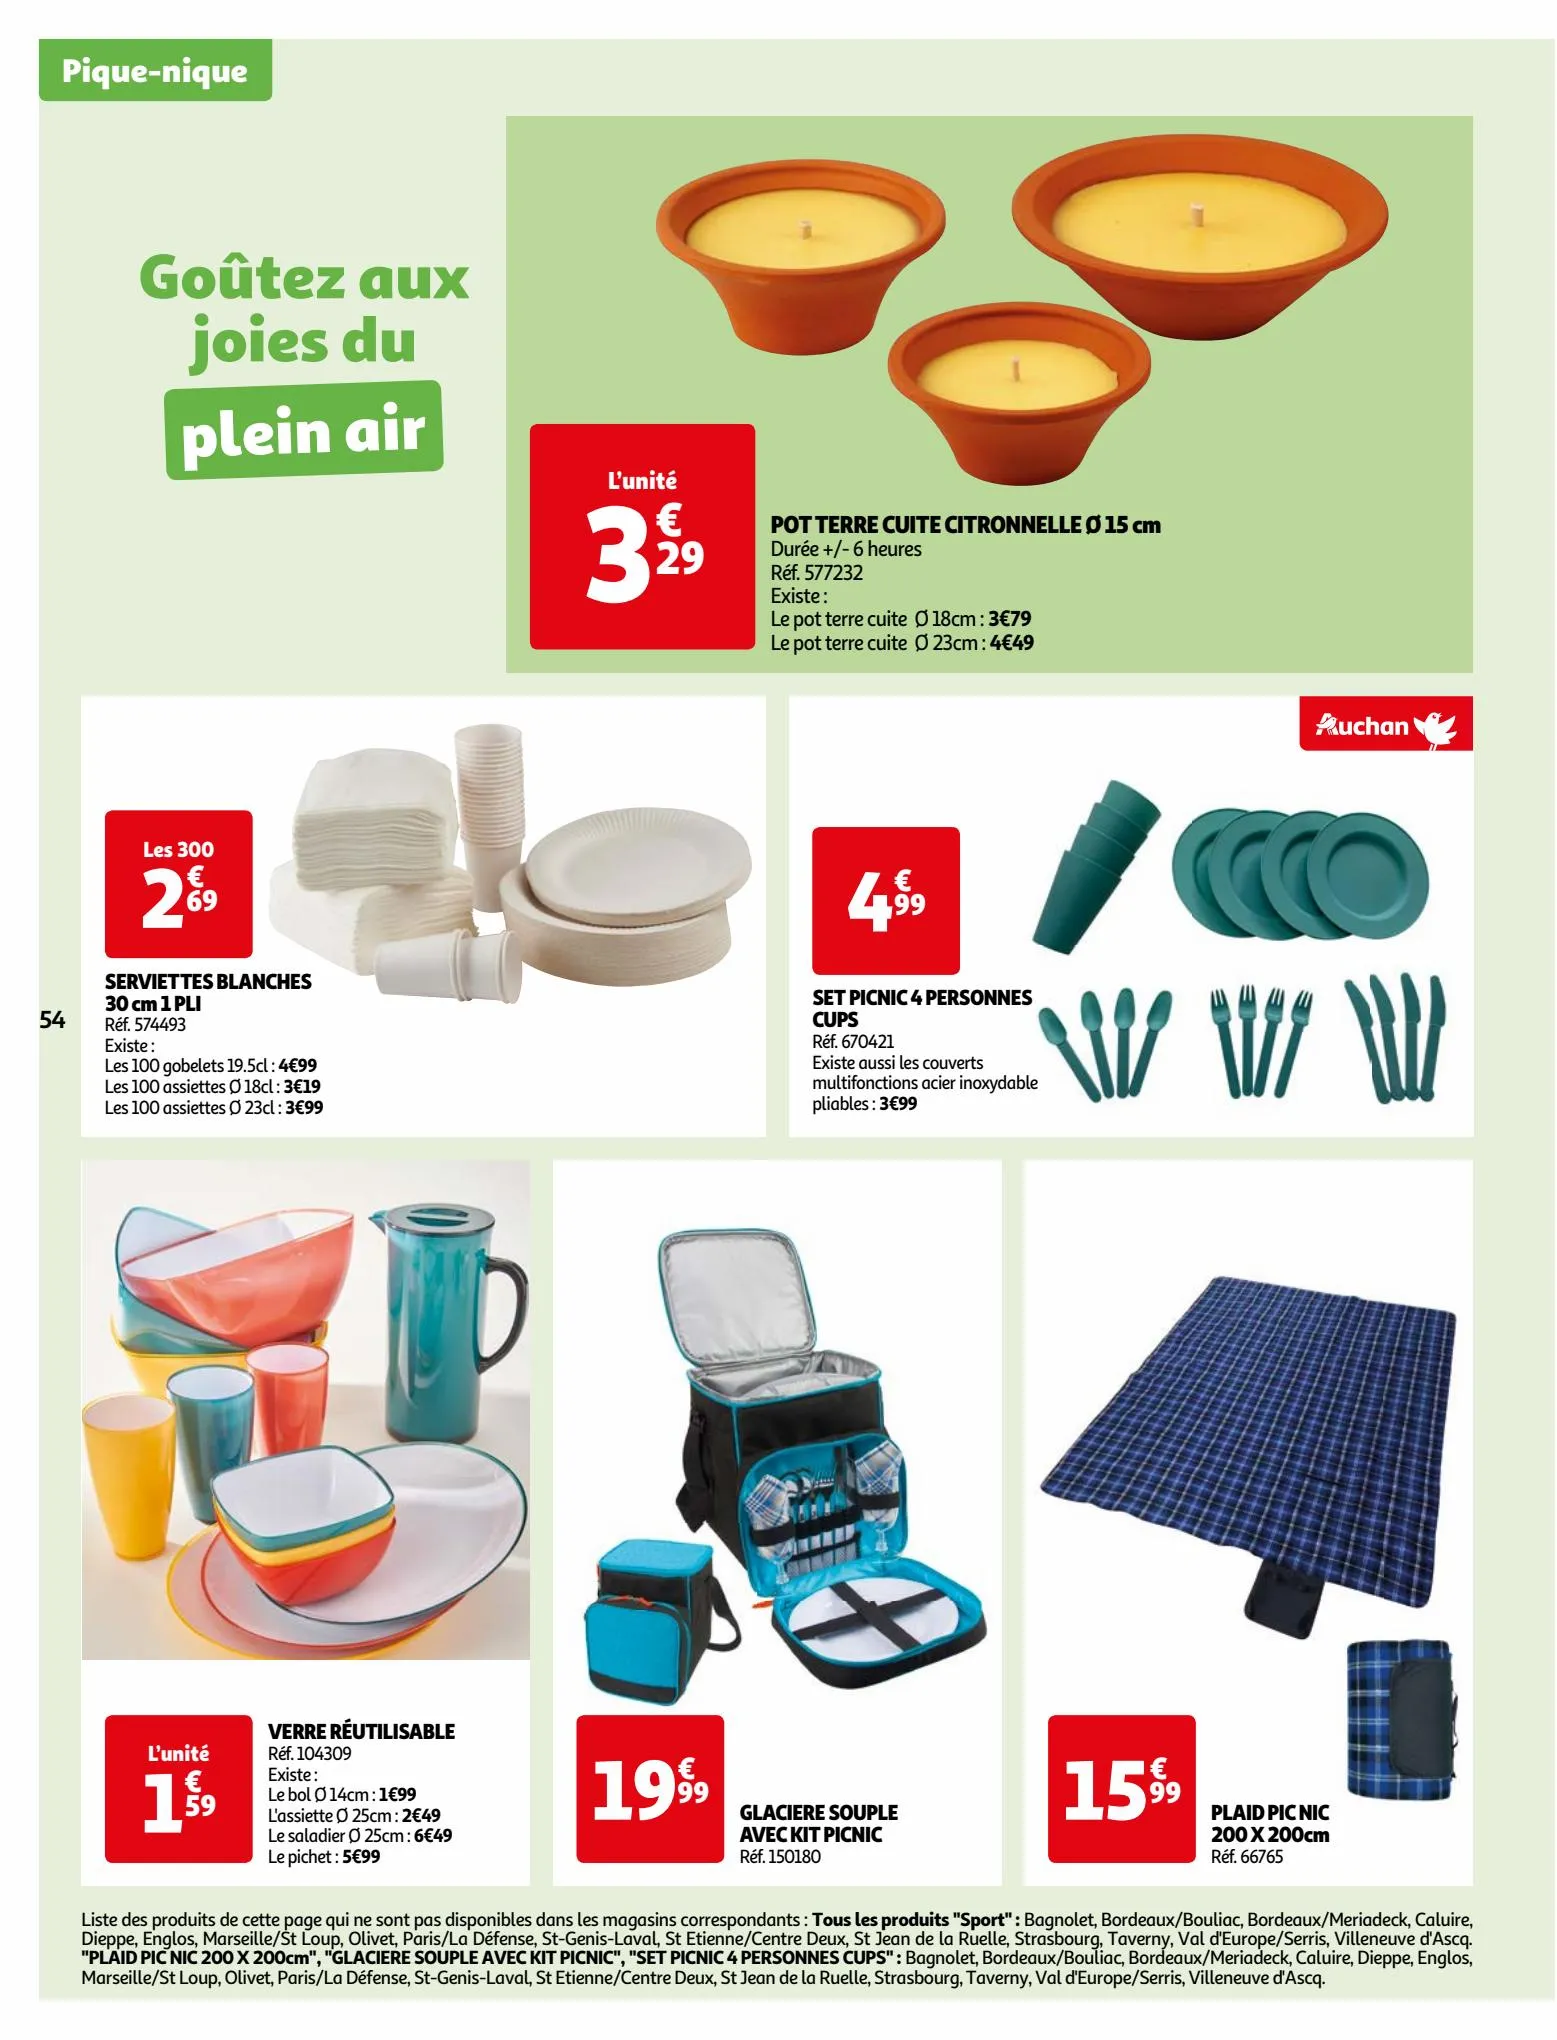 Catalogue Vos produits laitiers à petits prix !, page 00054